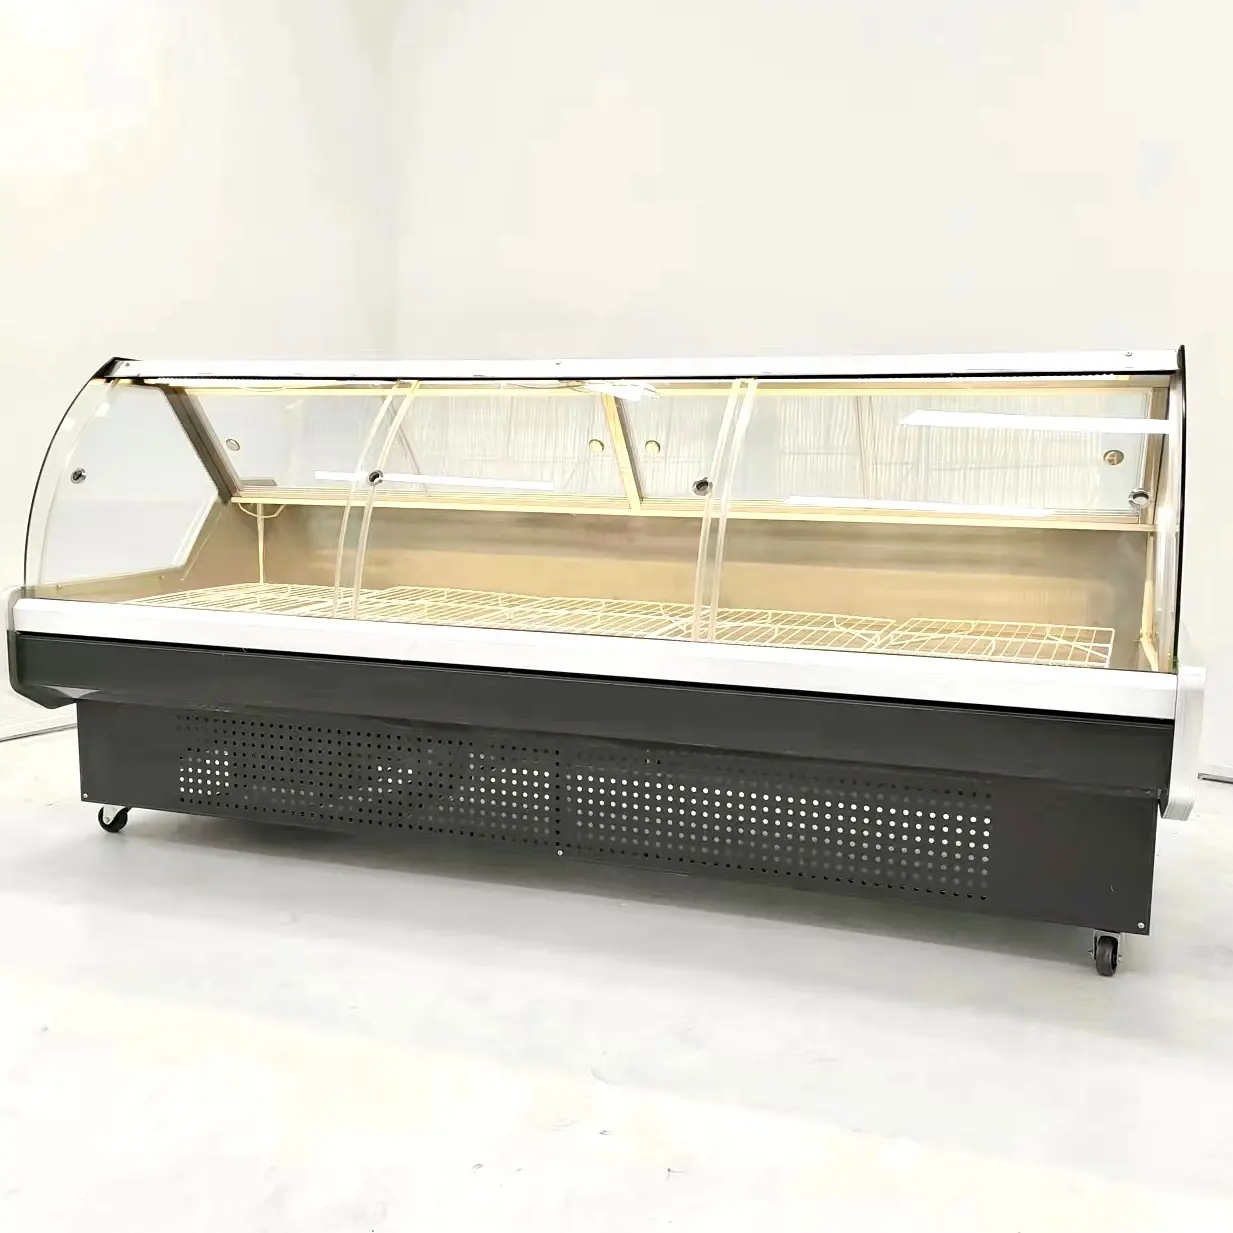 Fleischglas-Display kühler Gewerblicher Kühlschrank Kühl vitrine. Gefrier schrank von gekochtem Essen